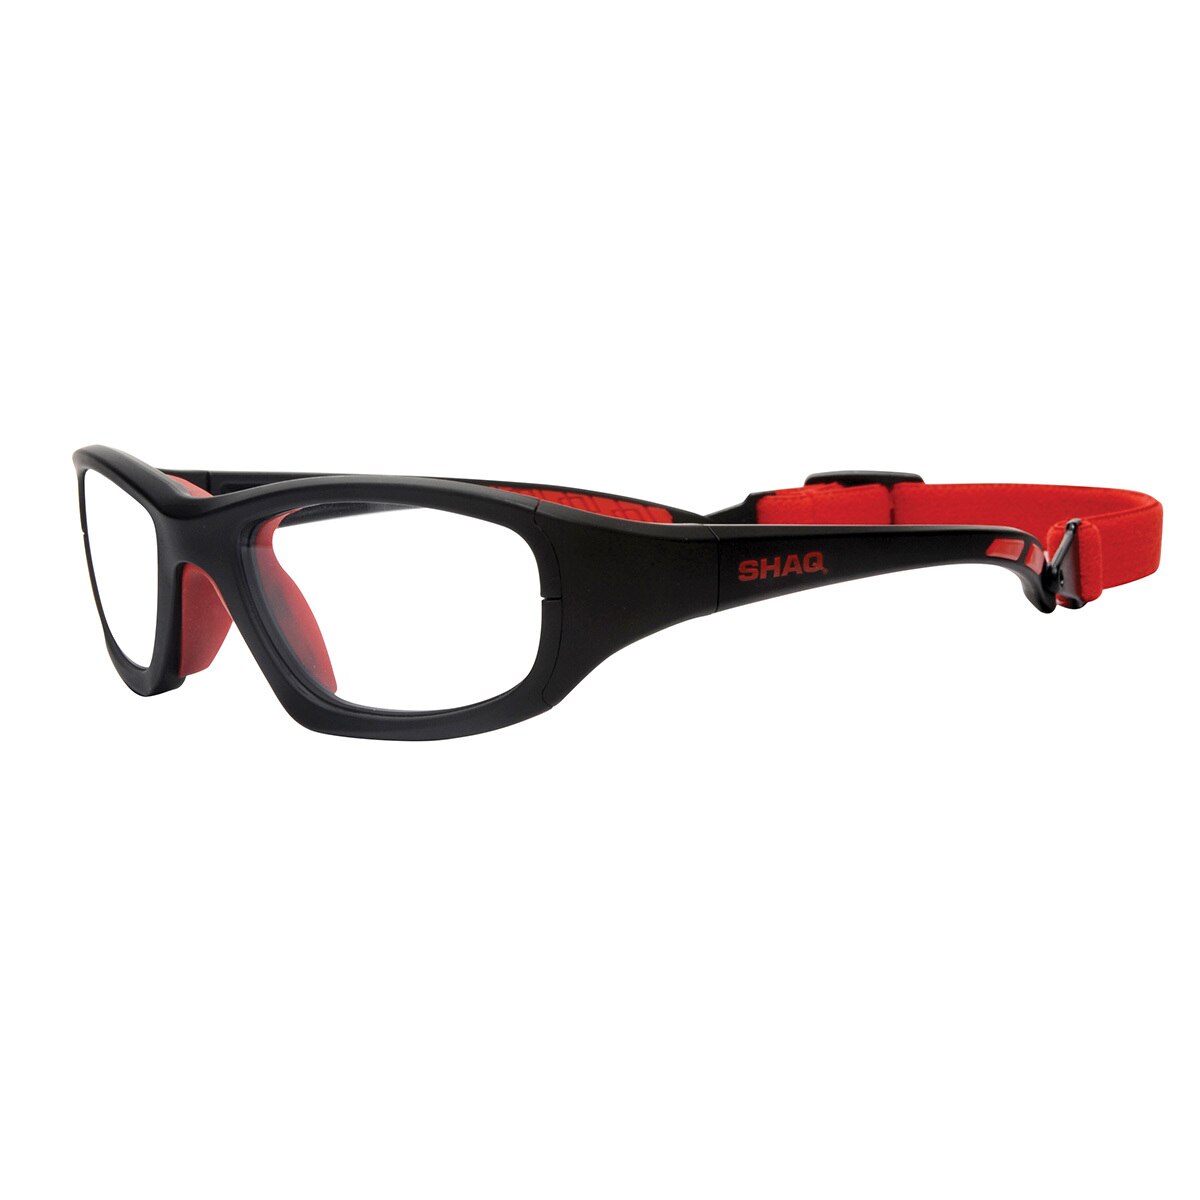 Shaq Gear 103Z BLACK/RED Goggles